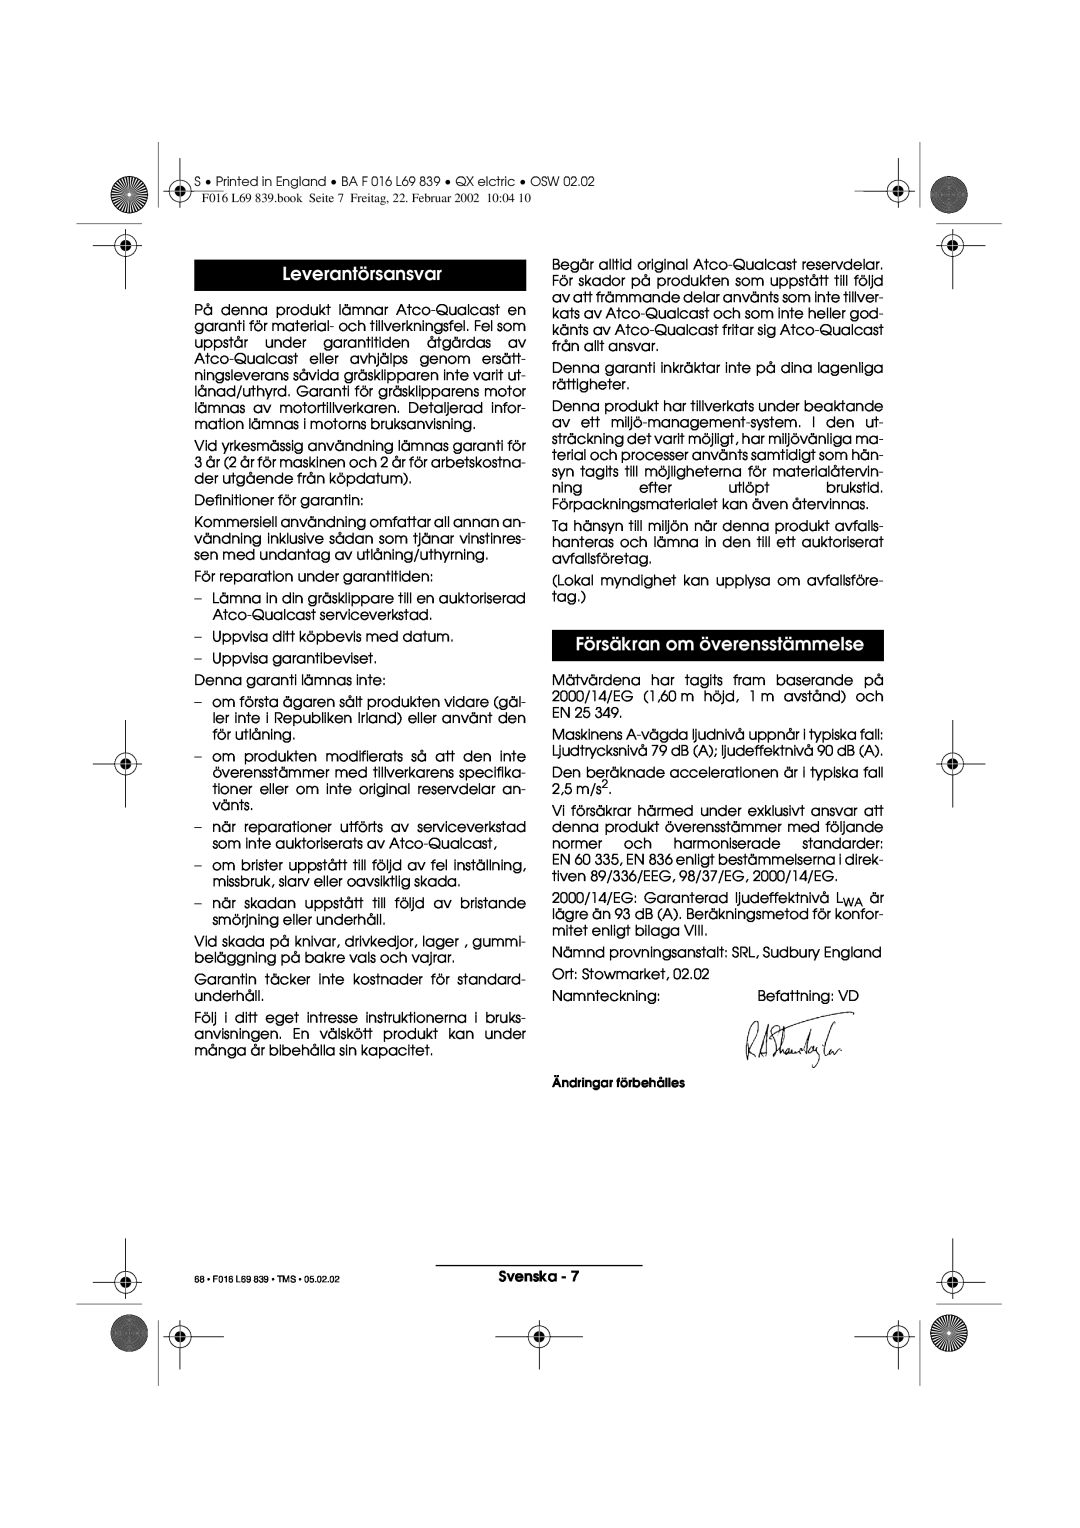 Atco QX operating instructions Leverantörsansvar, Försäkran om överensstämmelse, 68 F016 L69 839 TMS 